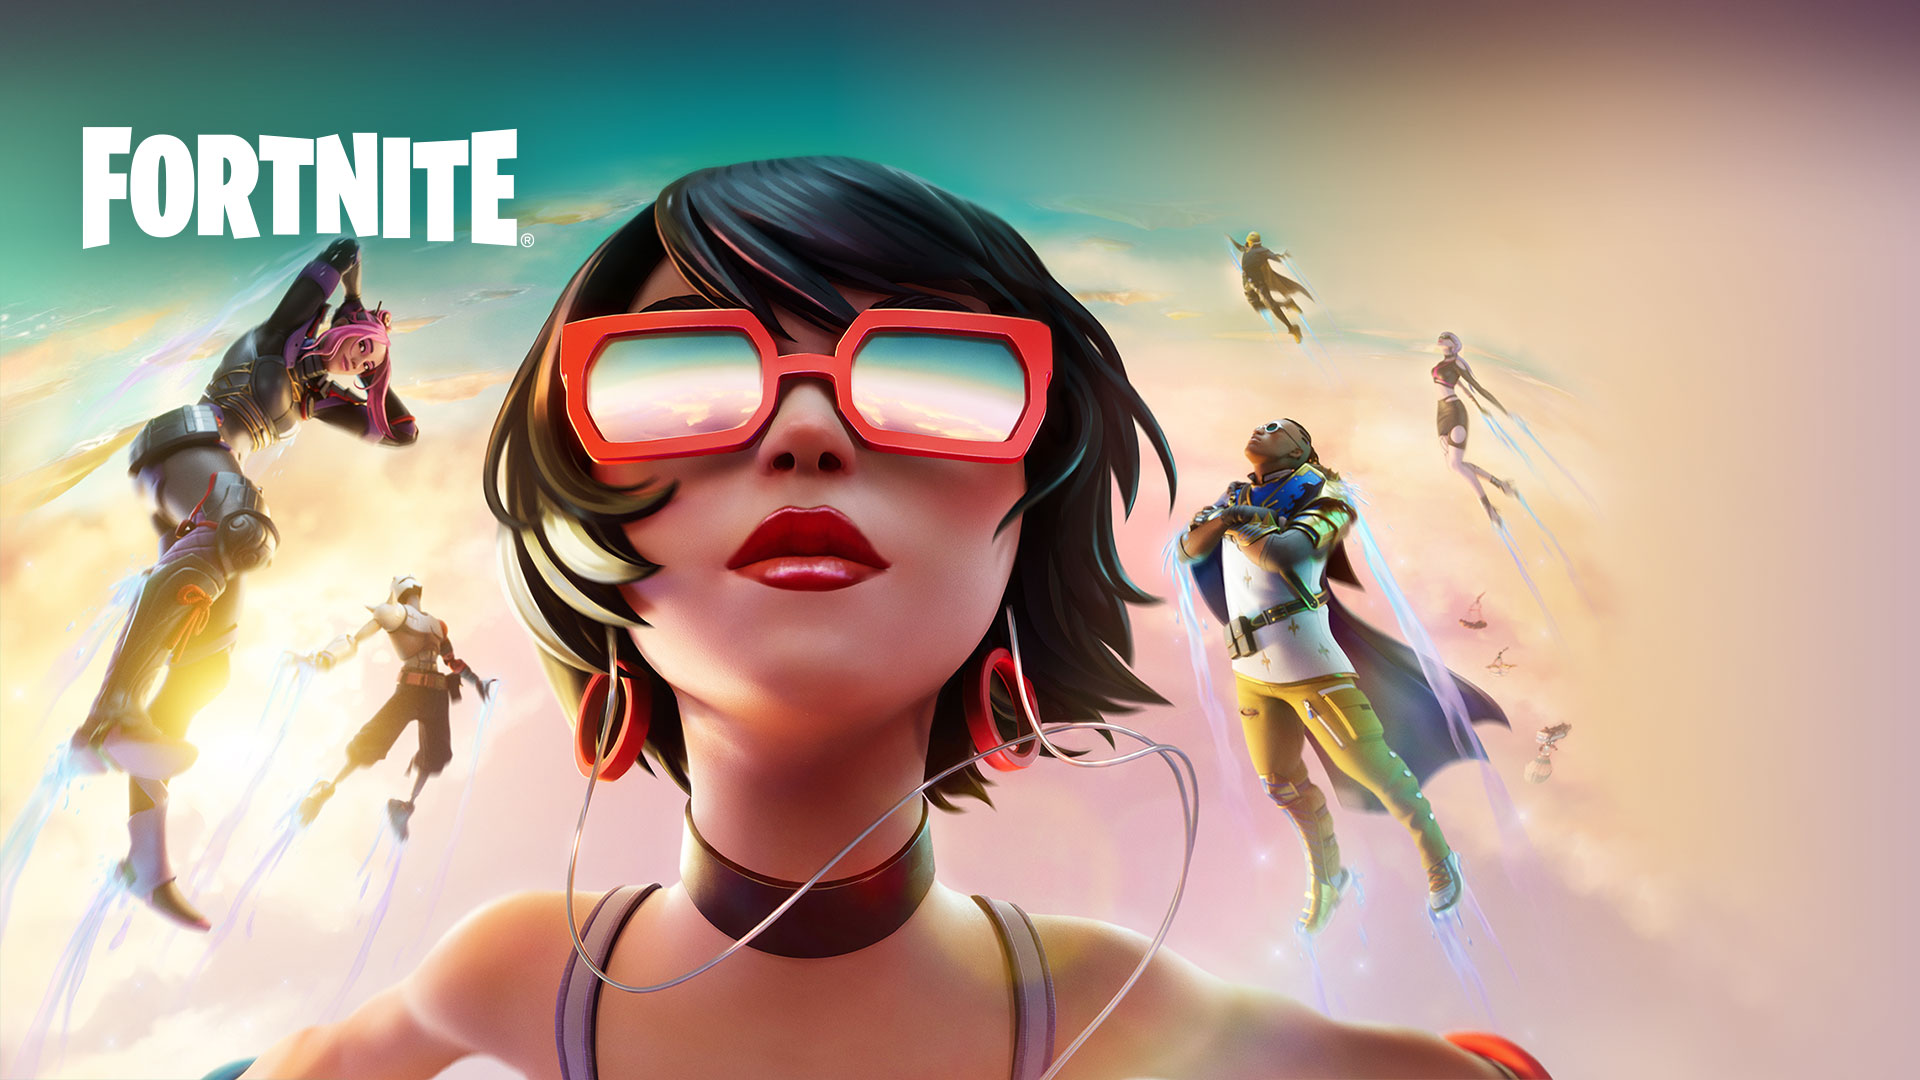 Fortnite, Dívka v červených slunečních brýlích se spolu s dalšími postavami vznáší v oblacích na pozadí pastelově zbarvené oblohy.